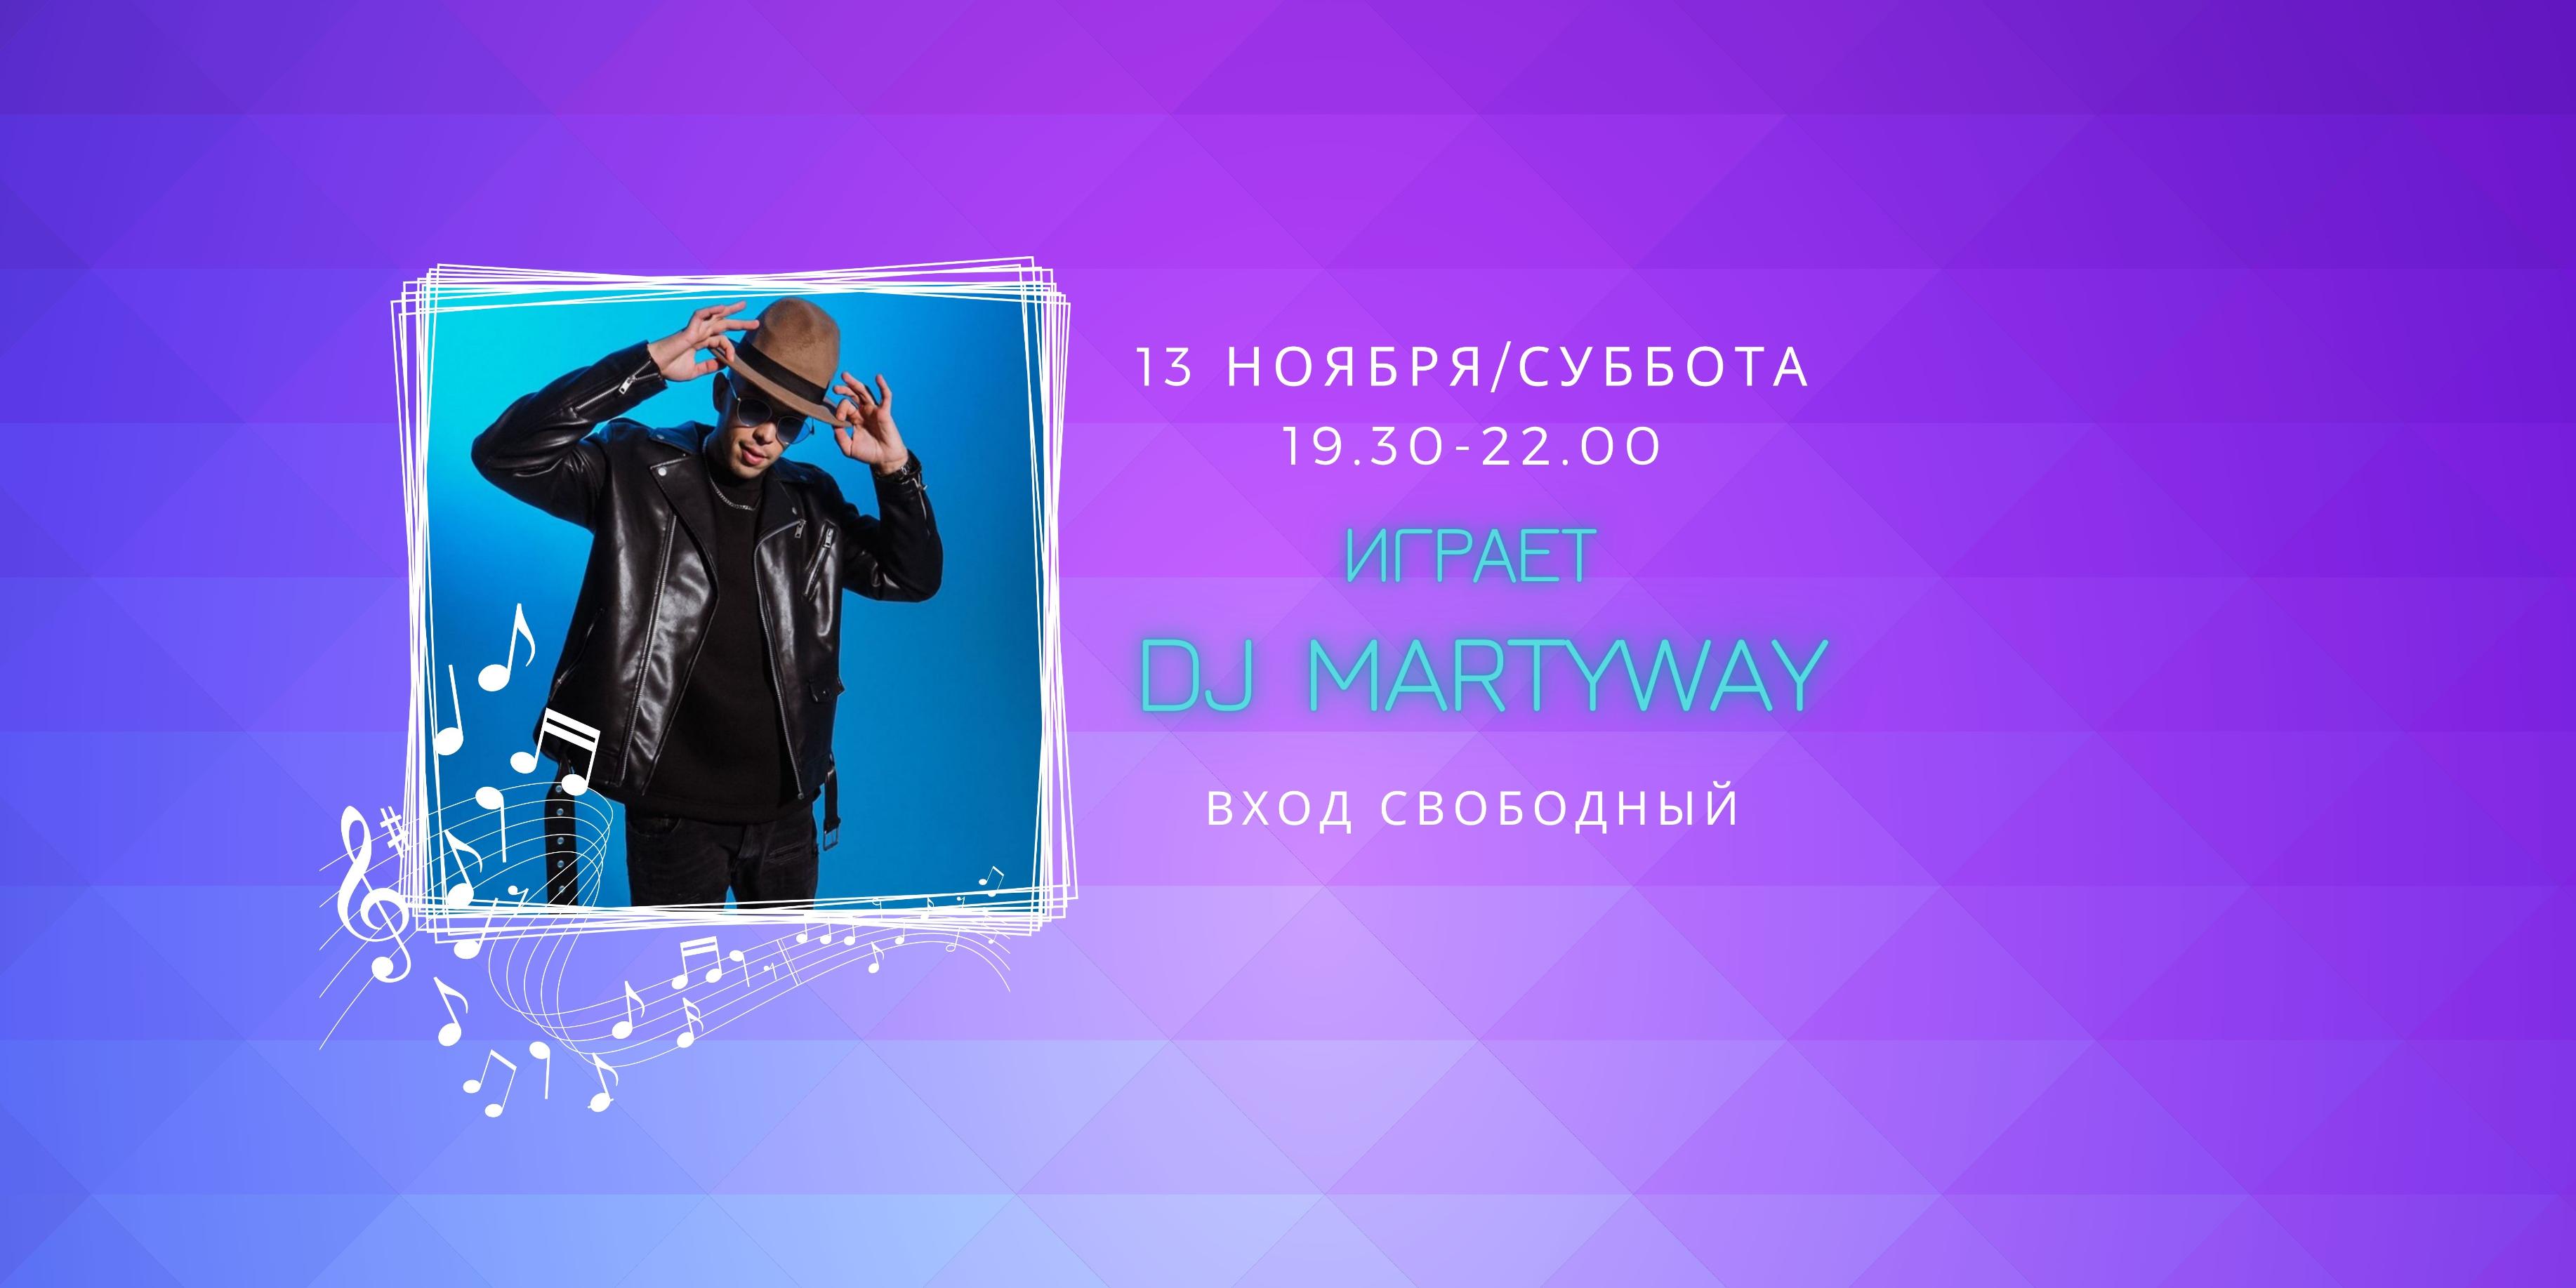 13.11 на сцене DJ Martyway